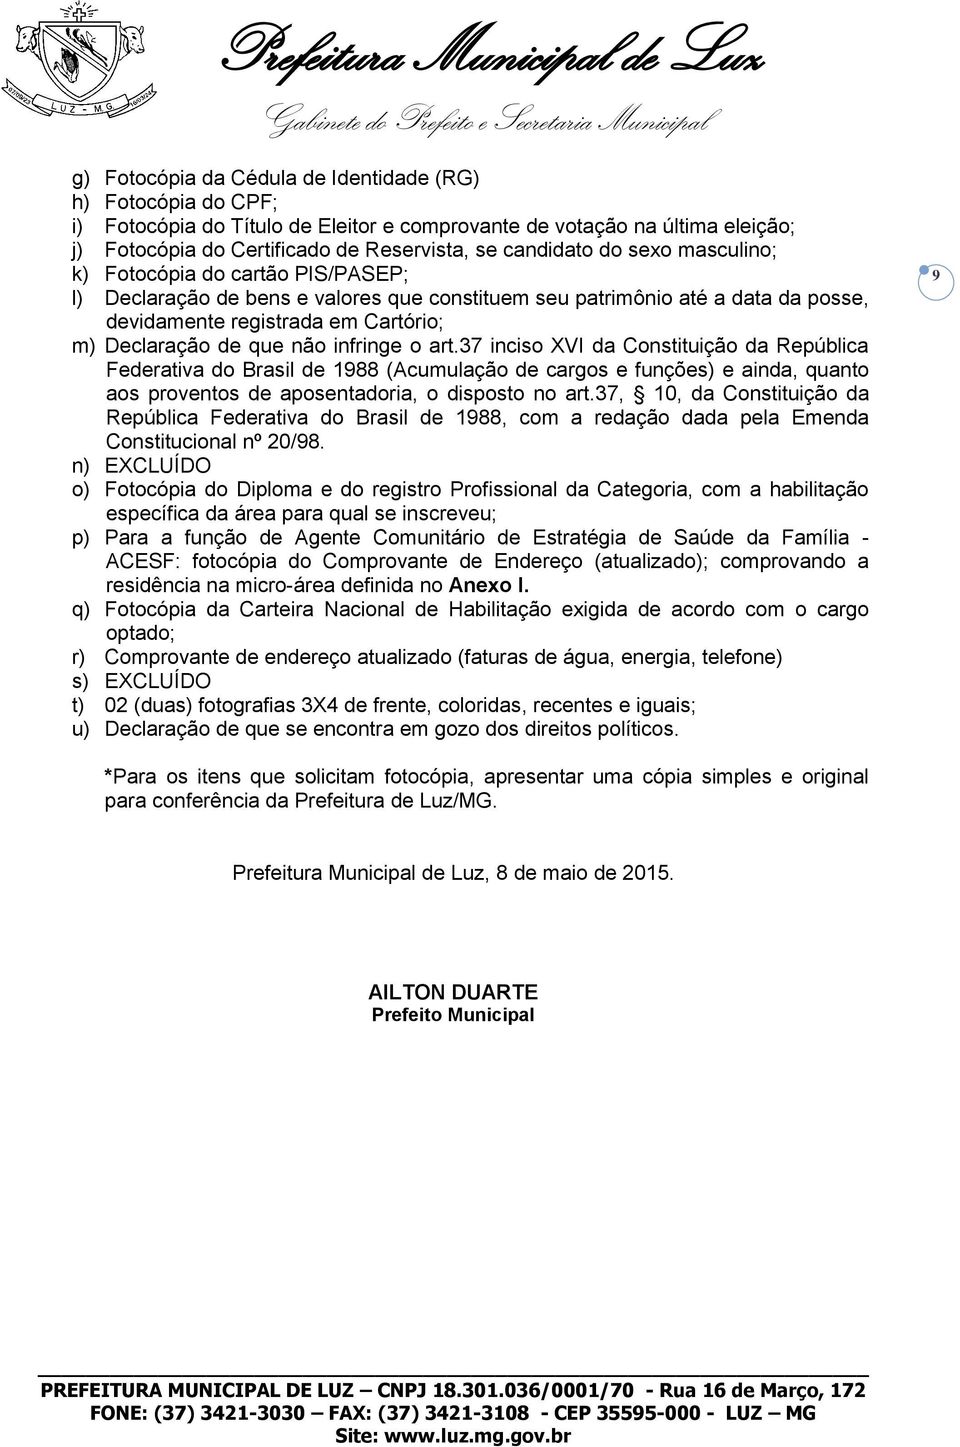 infringe o art.37 inciso XVI da Constituição da República Federativa do Brasil de 1988 (Acumulação de cargos e funções) e ainda, quanto aos proventos de aposentadoria, o disposto no art.